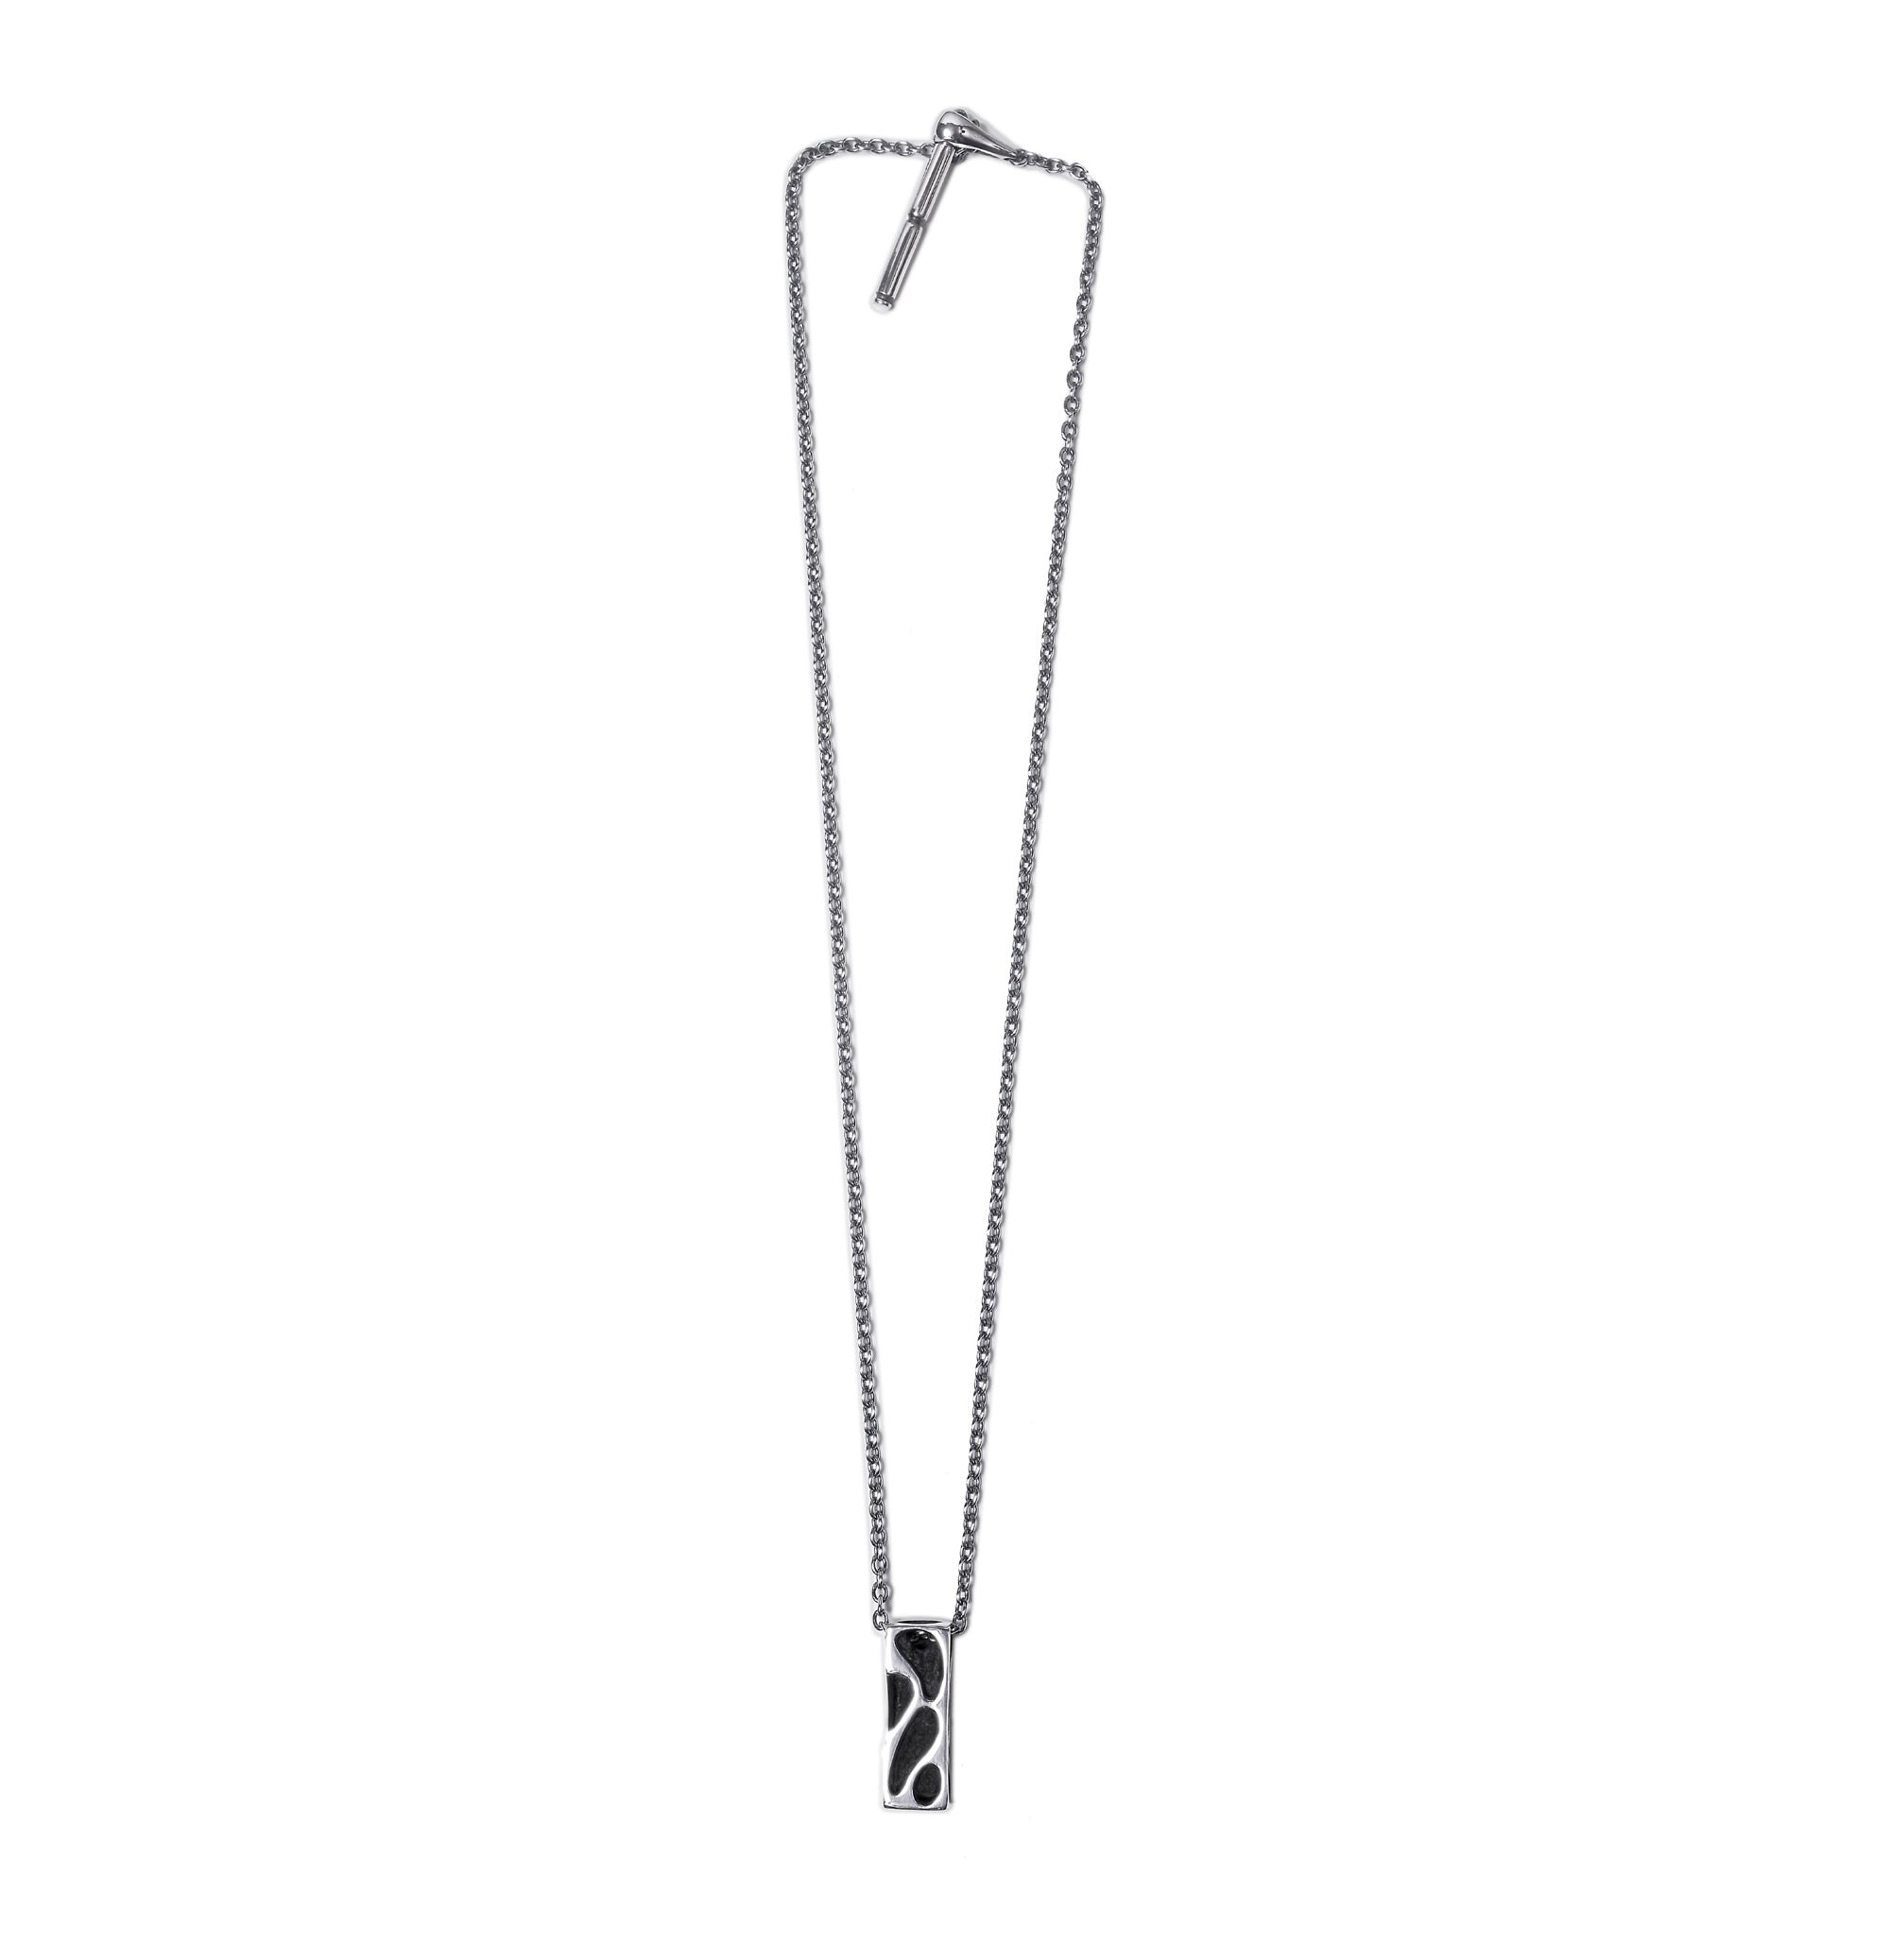 Envelop - Silver necklace with original clasp